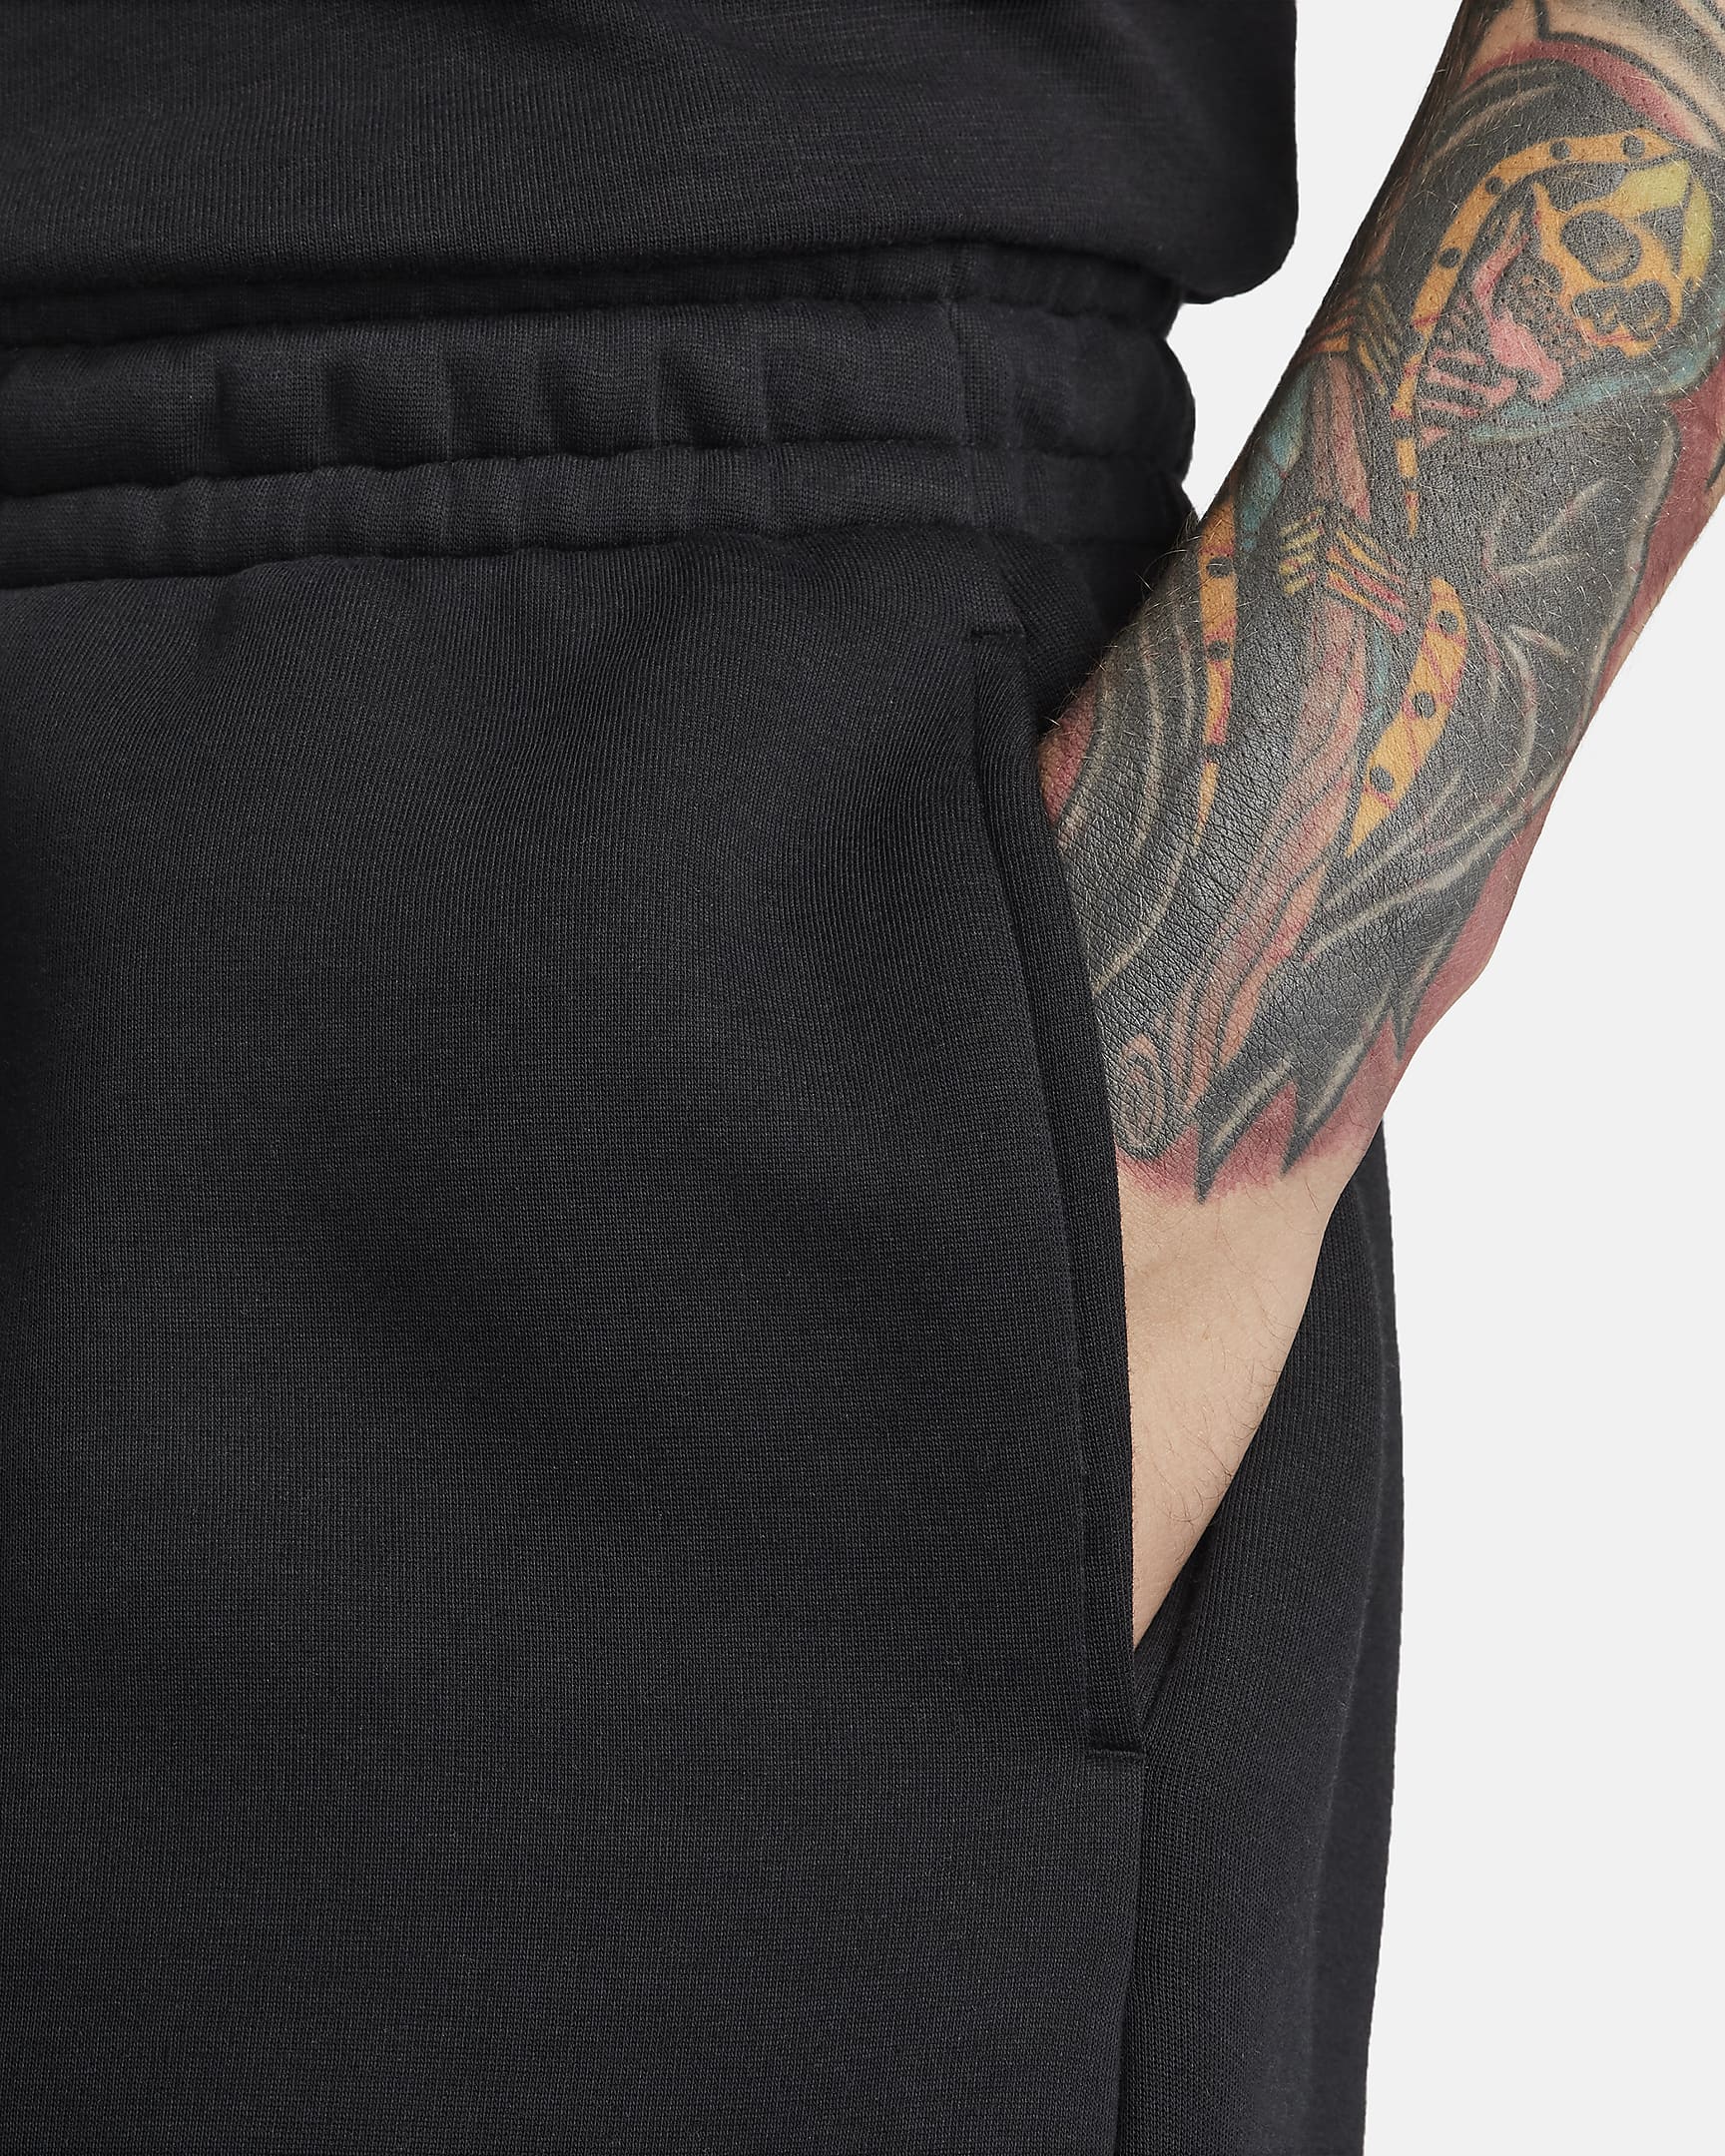 Nike Tech Fleece Re-imagined Men's Fleece Trousers - Black